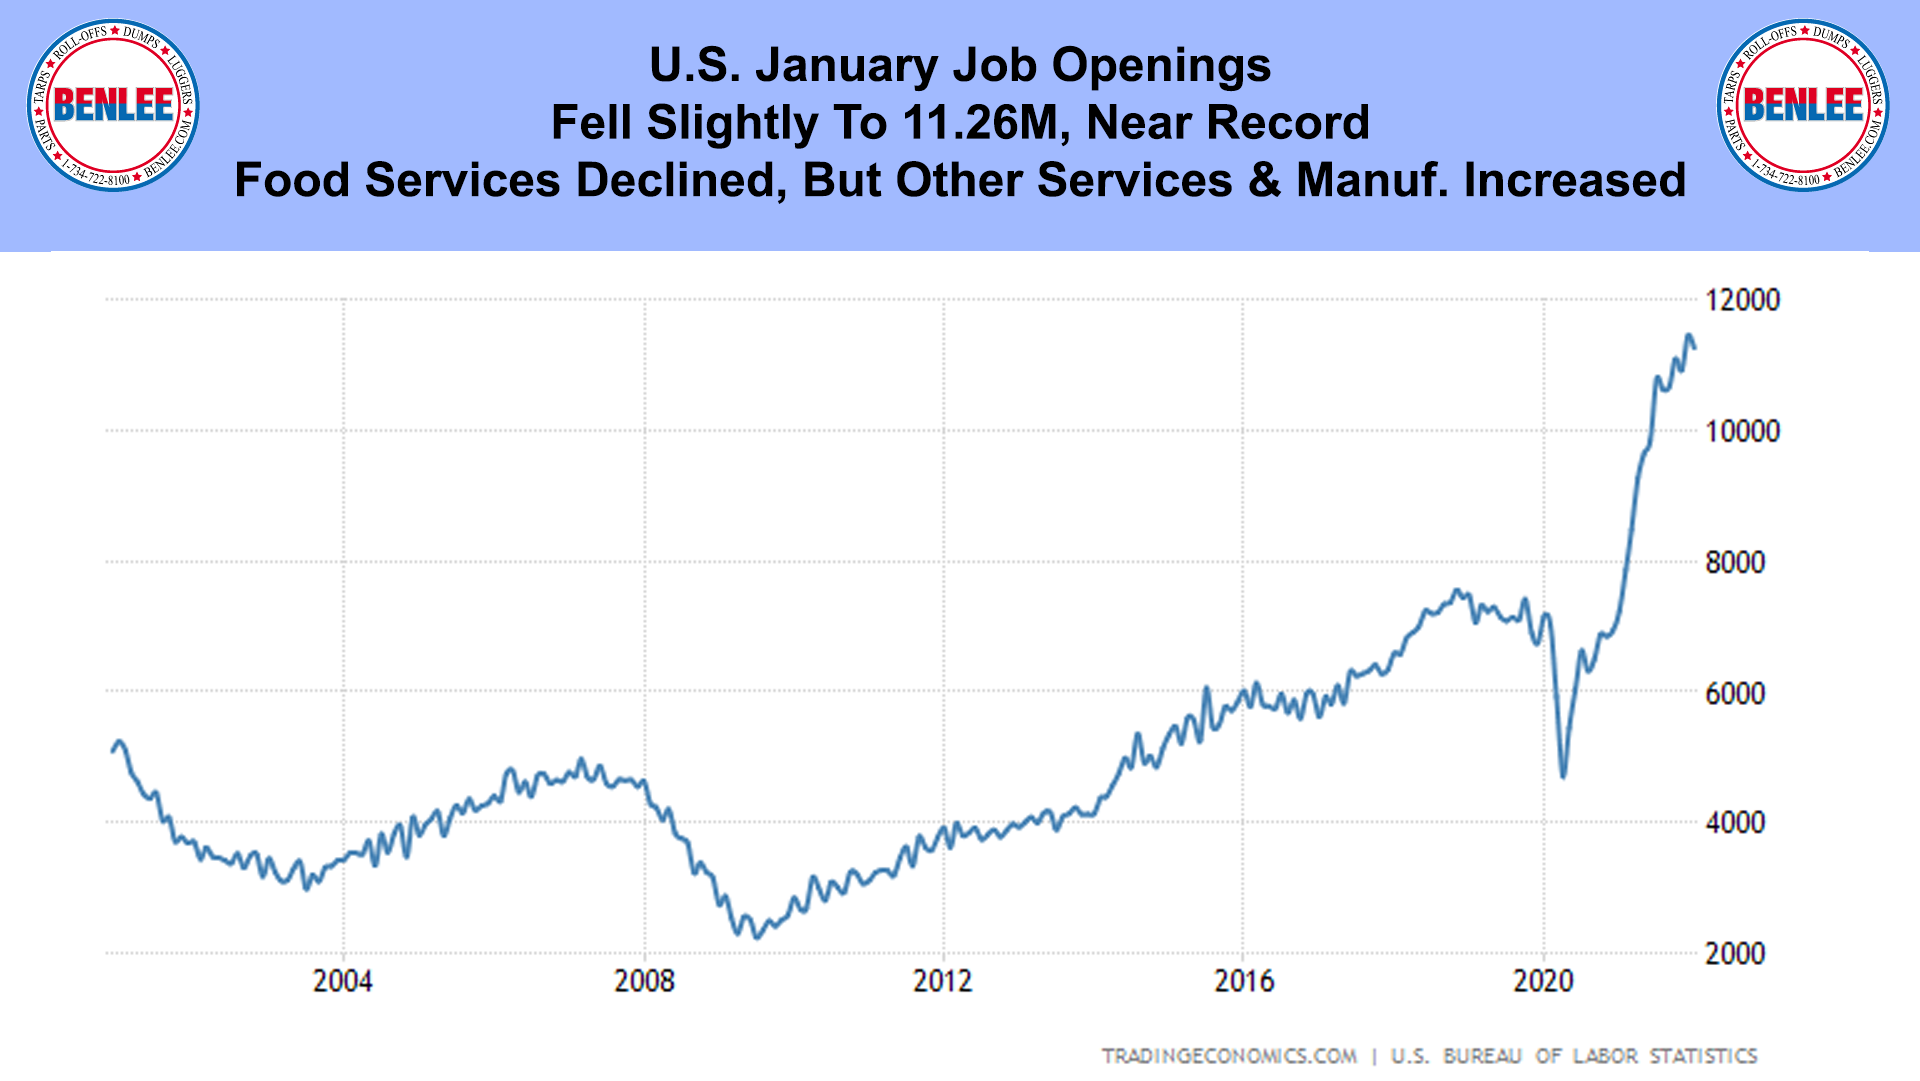 U.S. January Job Openings